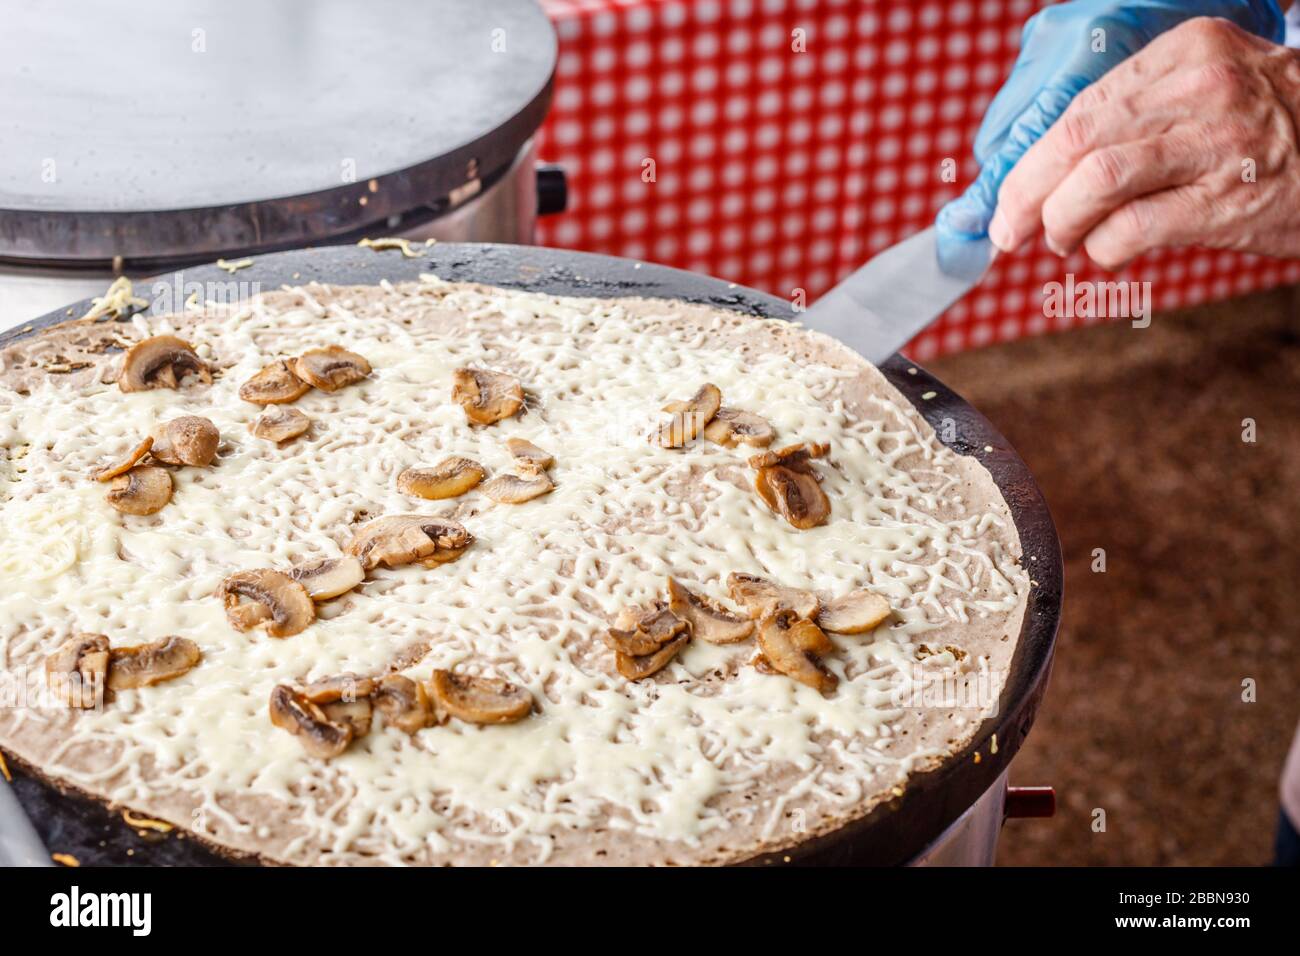 Fare crepes frittelle in un mercato alimentare. Una mano sta facendo crepes saporite all'aperto con il formaggio fuso e i funghi su una griglia metallica. Foto Stock